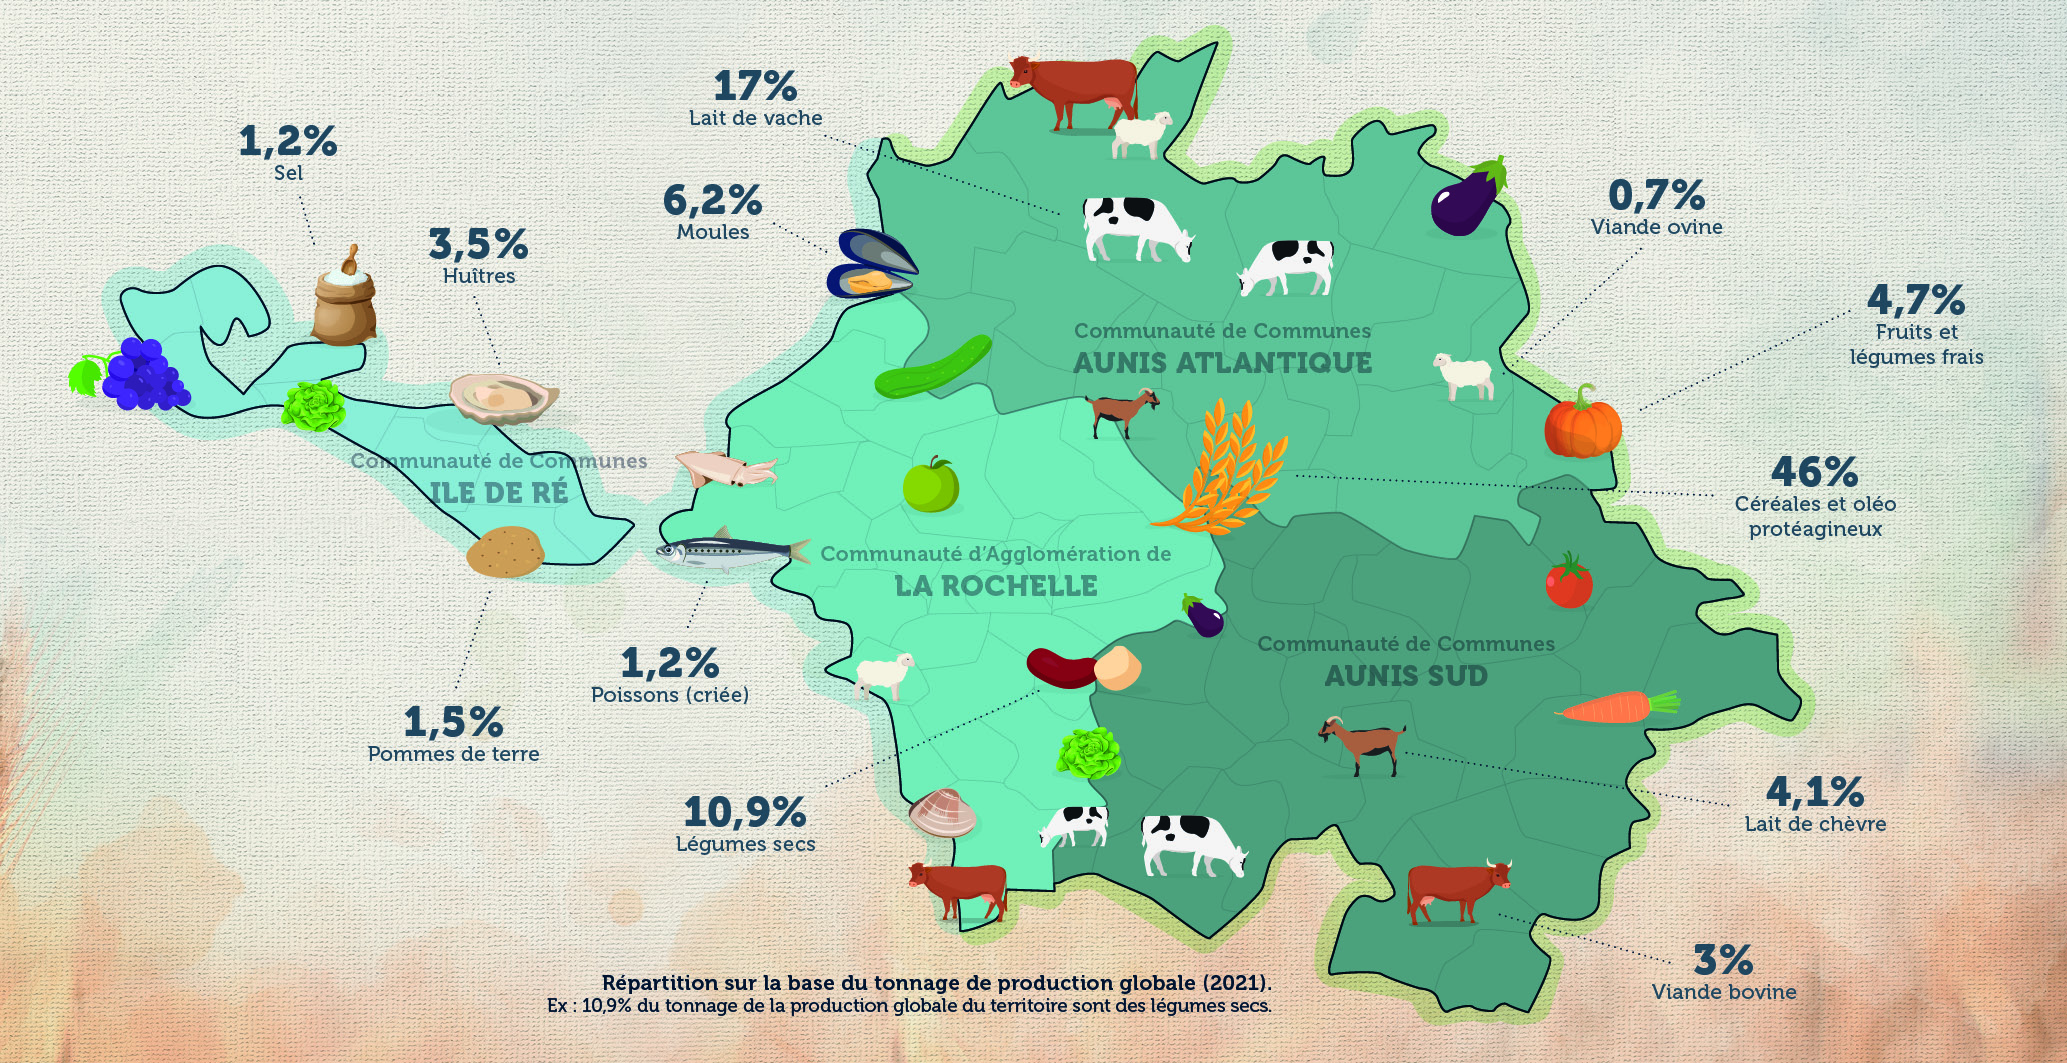 Illustration des principales productions du territoire : 46% céréales et oléo protéagineux, 17% lait de vache, 10,9% légumes secs, 6,2% moules, 4,7% fruits et légumes frais, 4,1% lait de chèvre, 3,5% huîtres, 3% viande bovine, 1,5% pommes de terre, 1,2% sel, 1,2% poissons (criée), 0,7% viande ovine